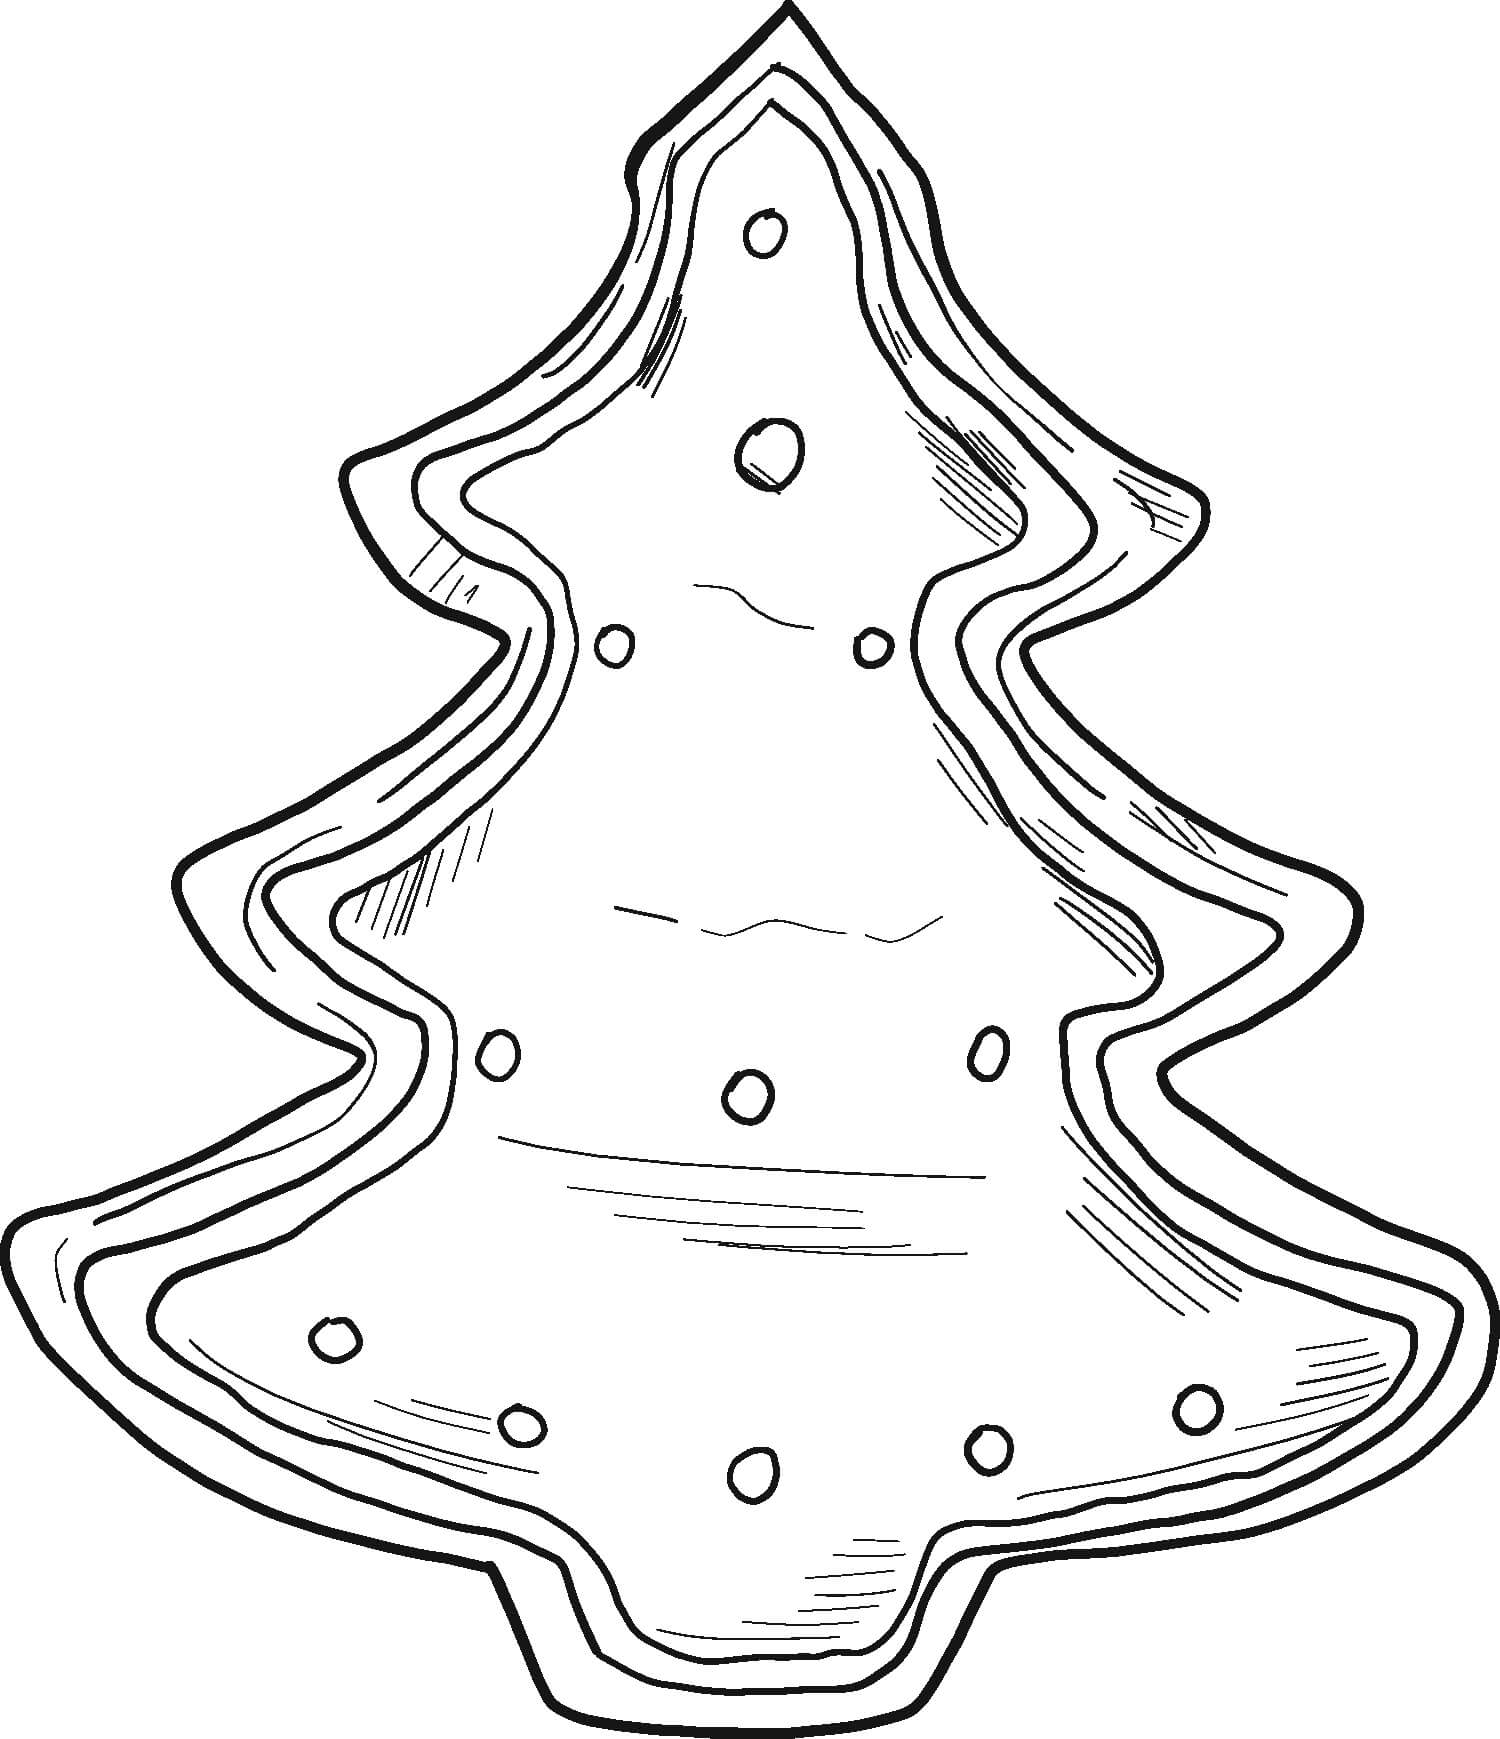 Weihnachtsplätzchen in Form einer Kiefer